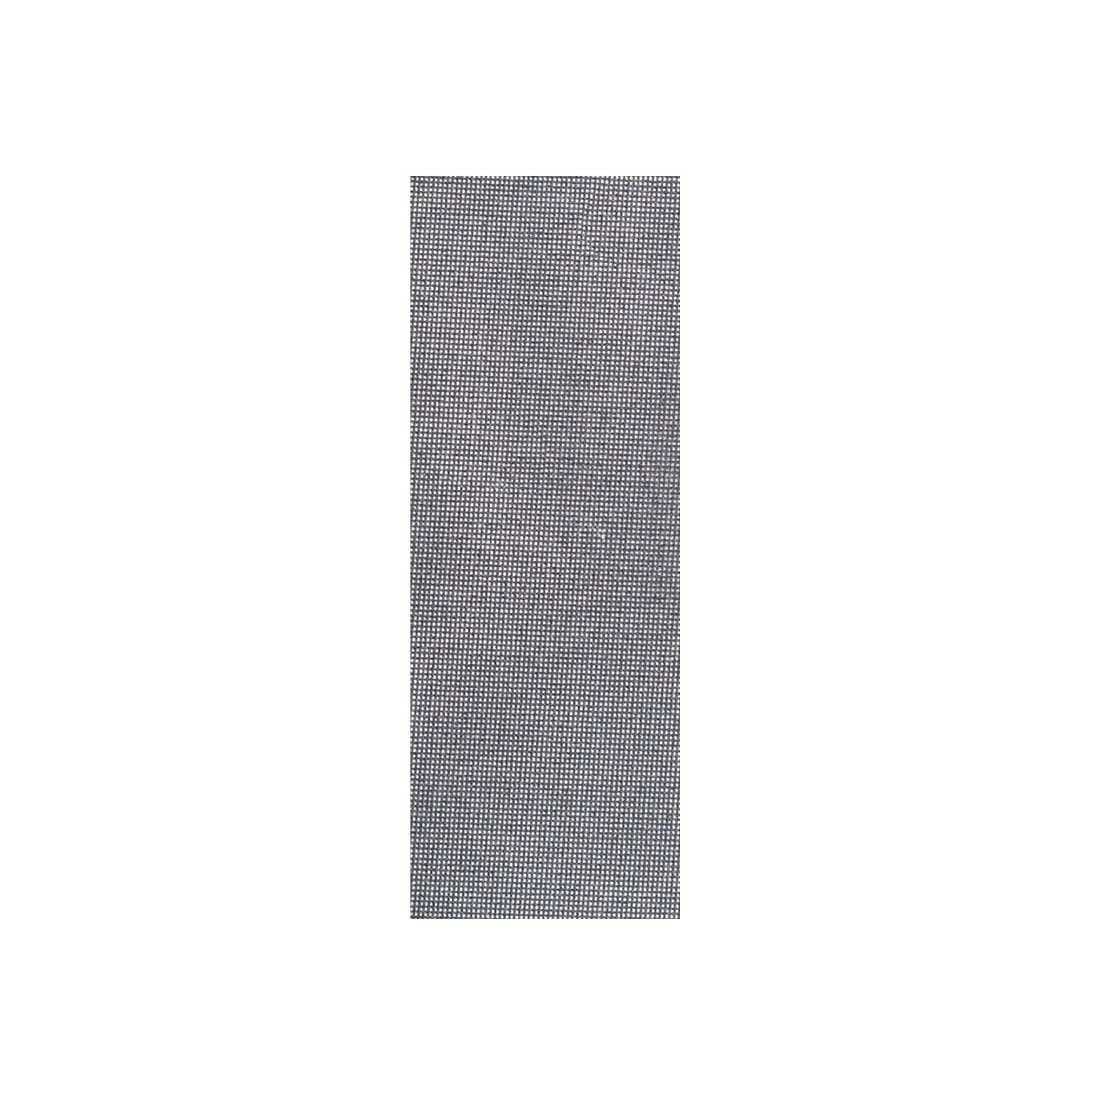 MioTools Schleifpapier 280 x 115 mm Schleifgitter für Handschleifer, Siliciumcarbid, 10 Stk., K180